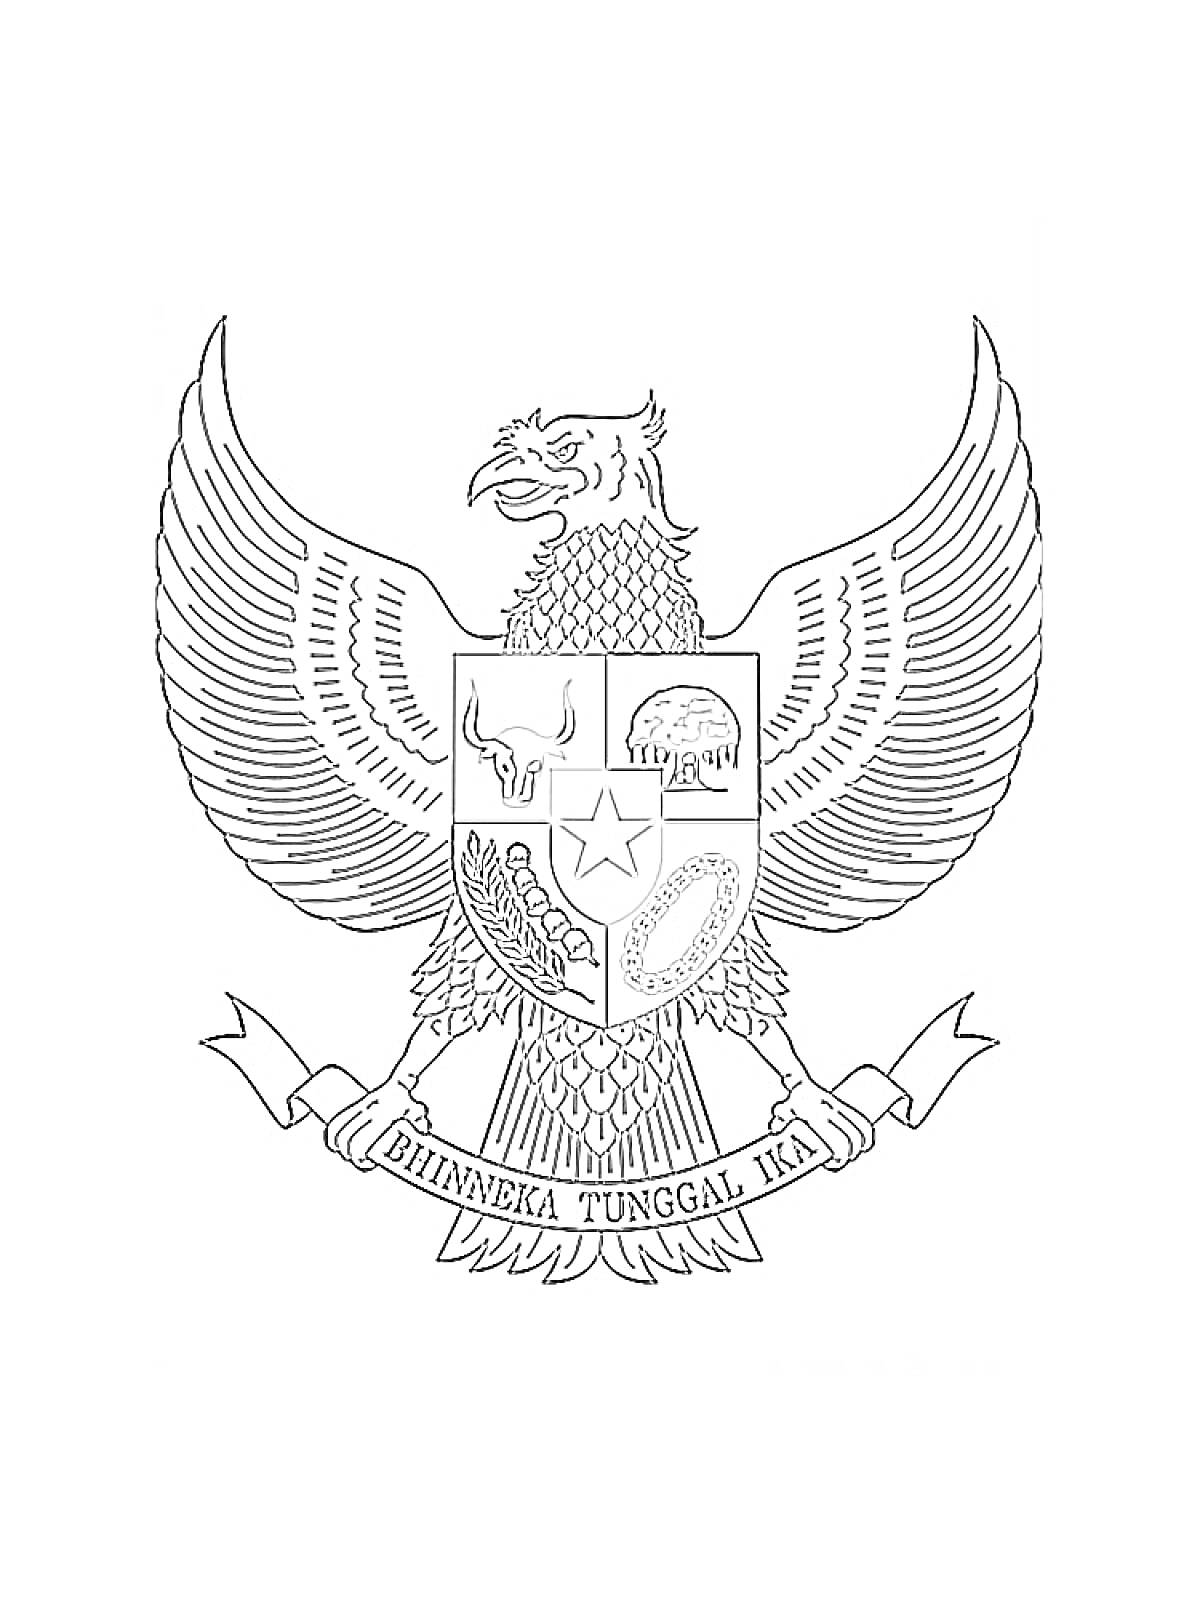 Герб Индонезии (Garuda Pancasila). Орел с крыльями, щит с пятью символами (бык, дерево баньяна, звезда, цепь, рис и хлопок), лента с надписью 